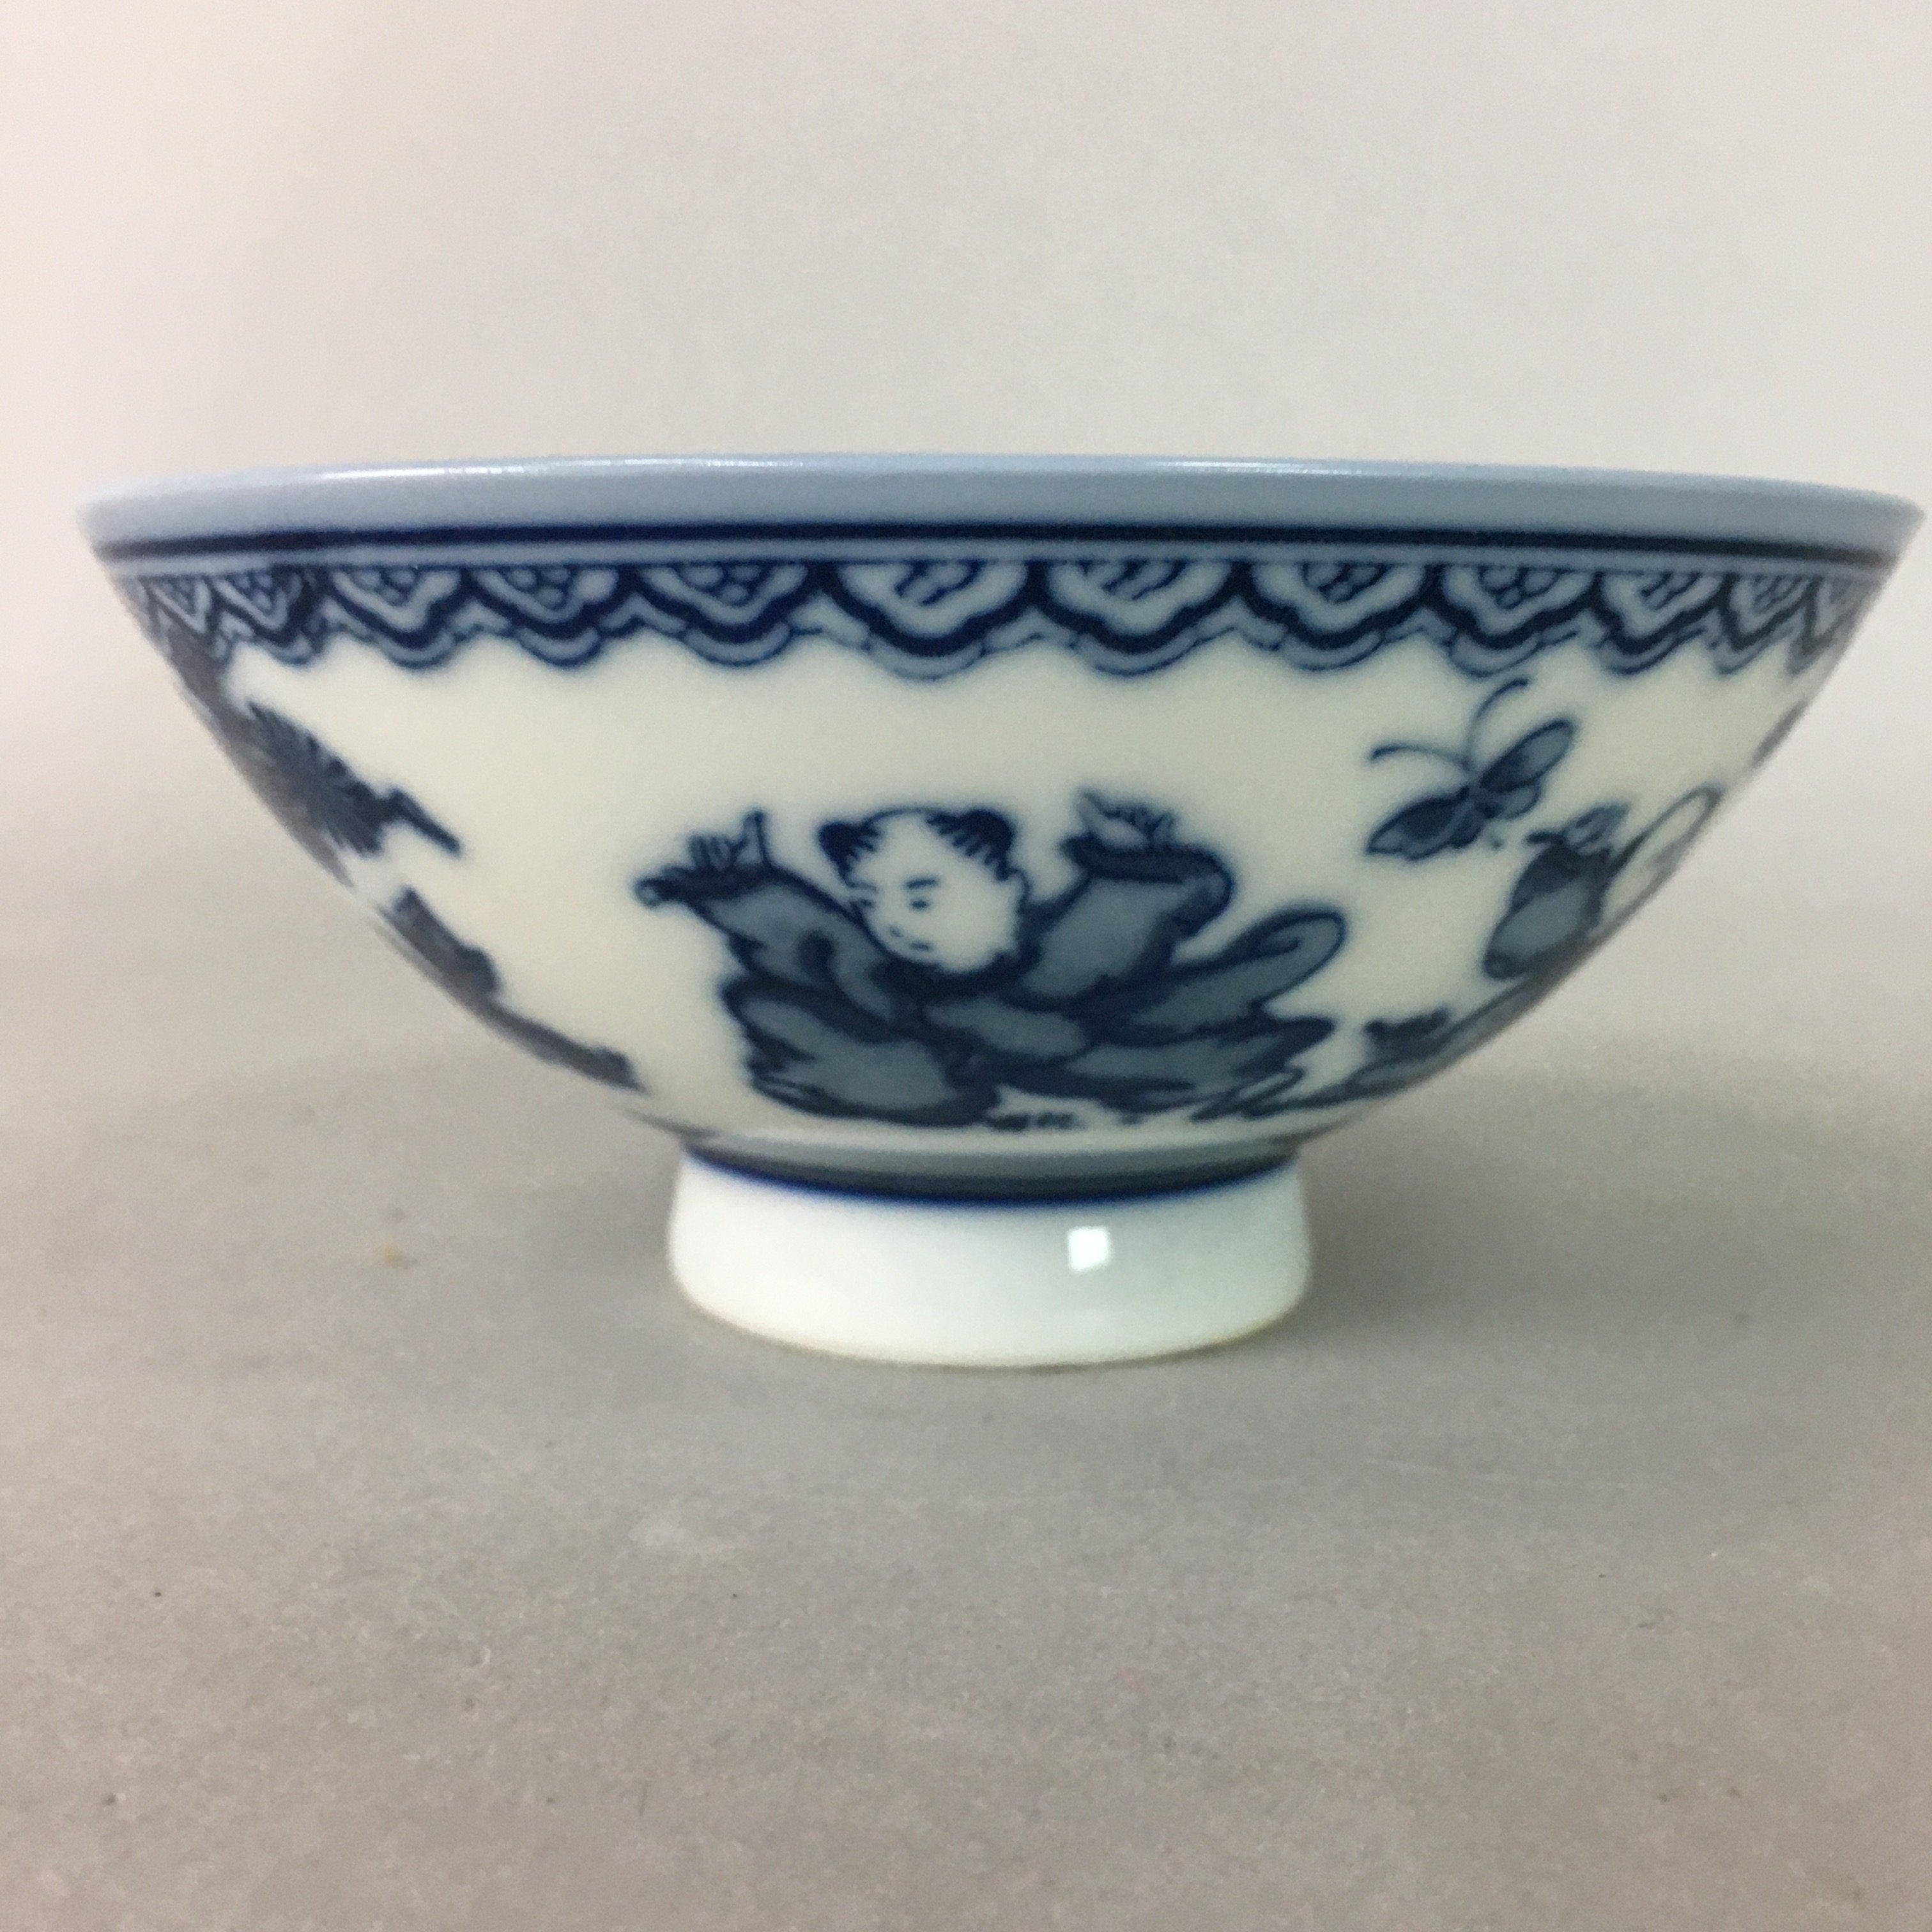 https://chidorivintage.com/cdn/shop/products/Japanese-Porcelain-Rice-Bowl-Vtg-Sometsuke-Blue-White-Child-Karako-PP69-2_8a61bd10-a78b-4181-88fd-0f7b2c2fa07b.jpg?v=1629331702